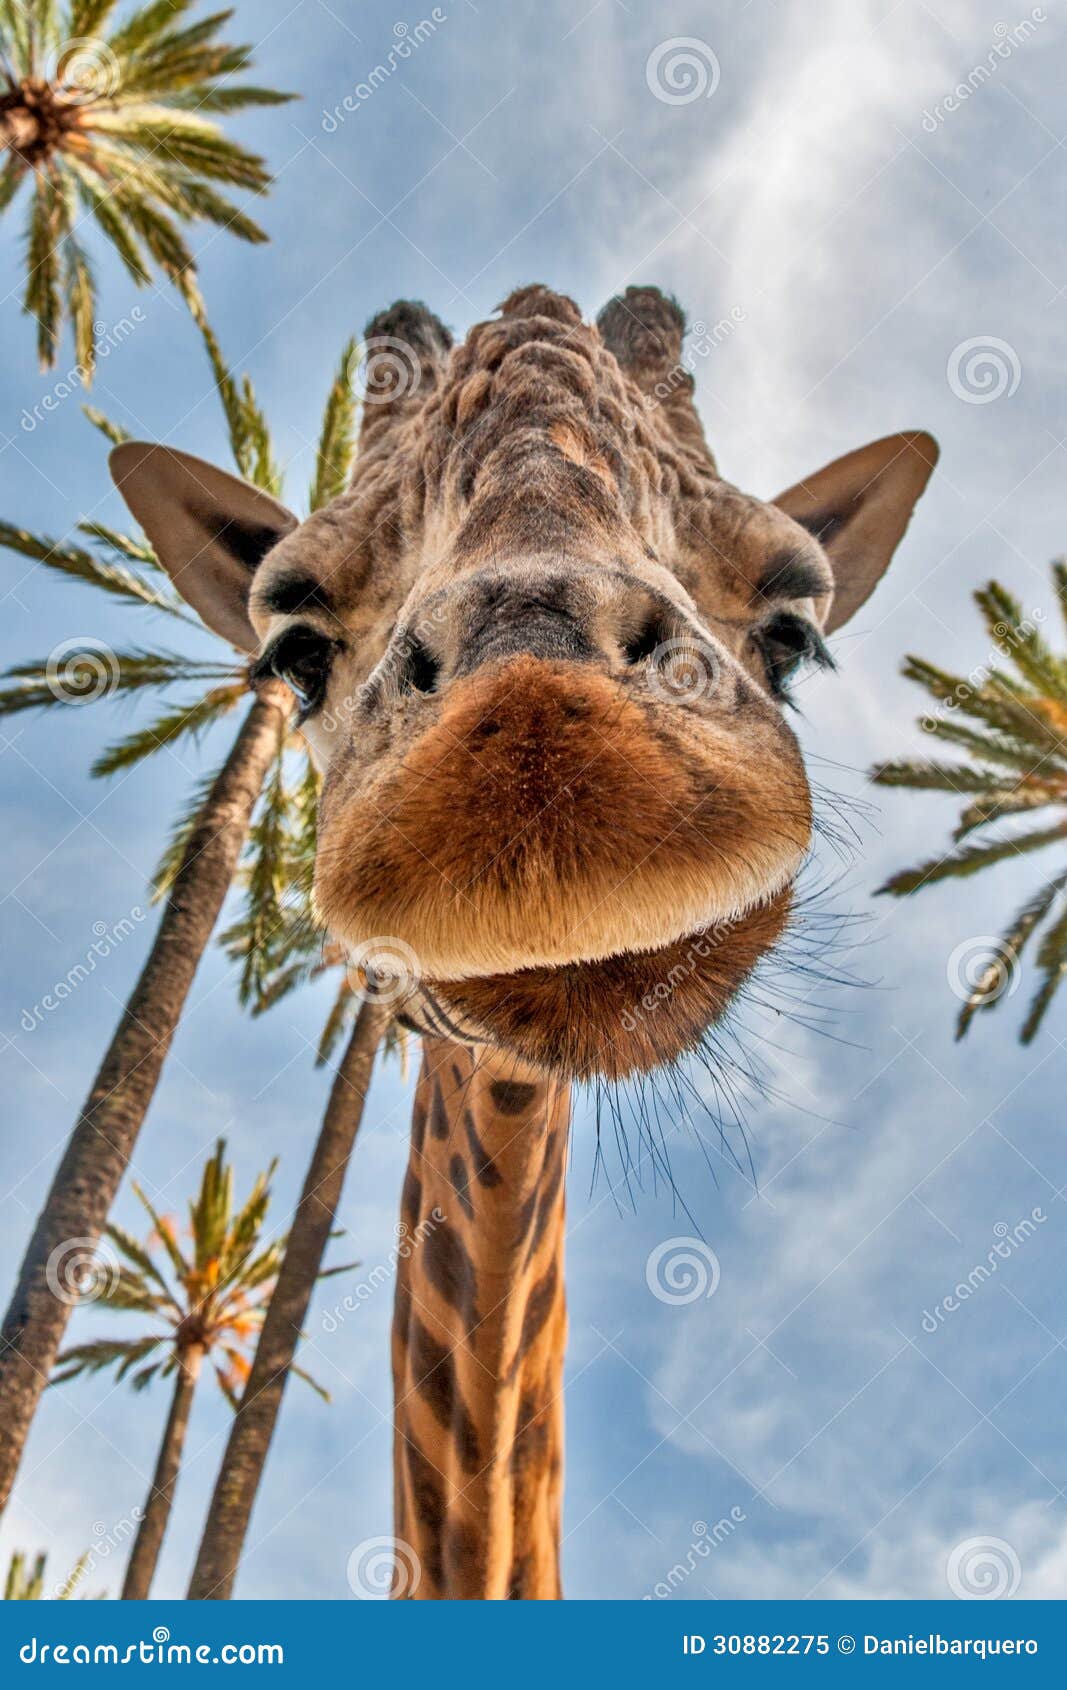 giraffes head